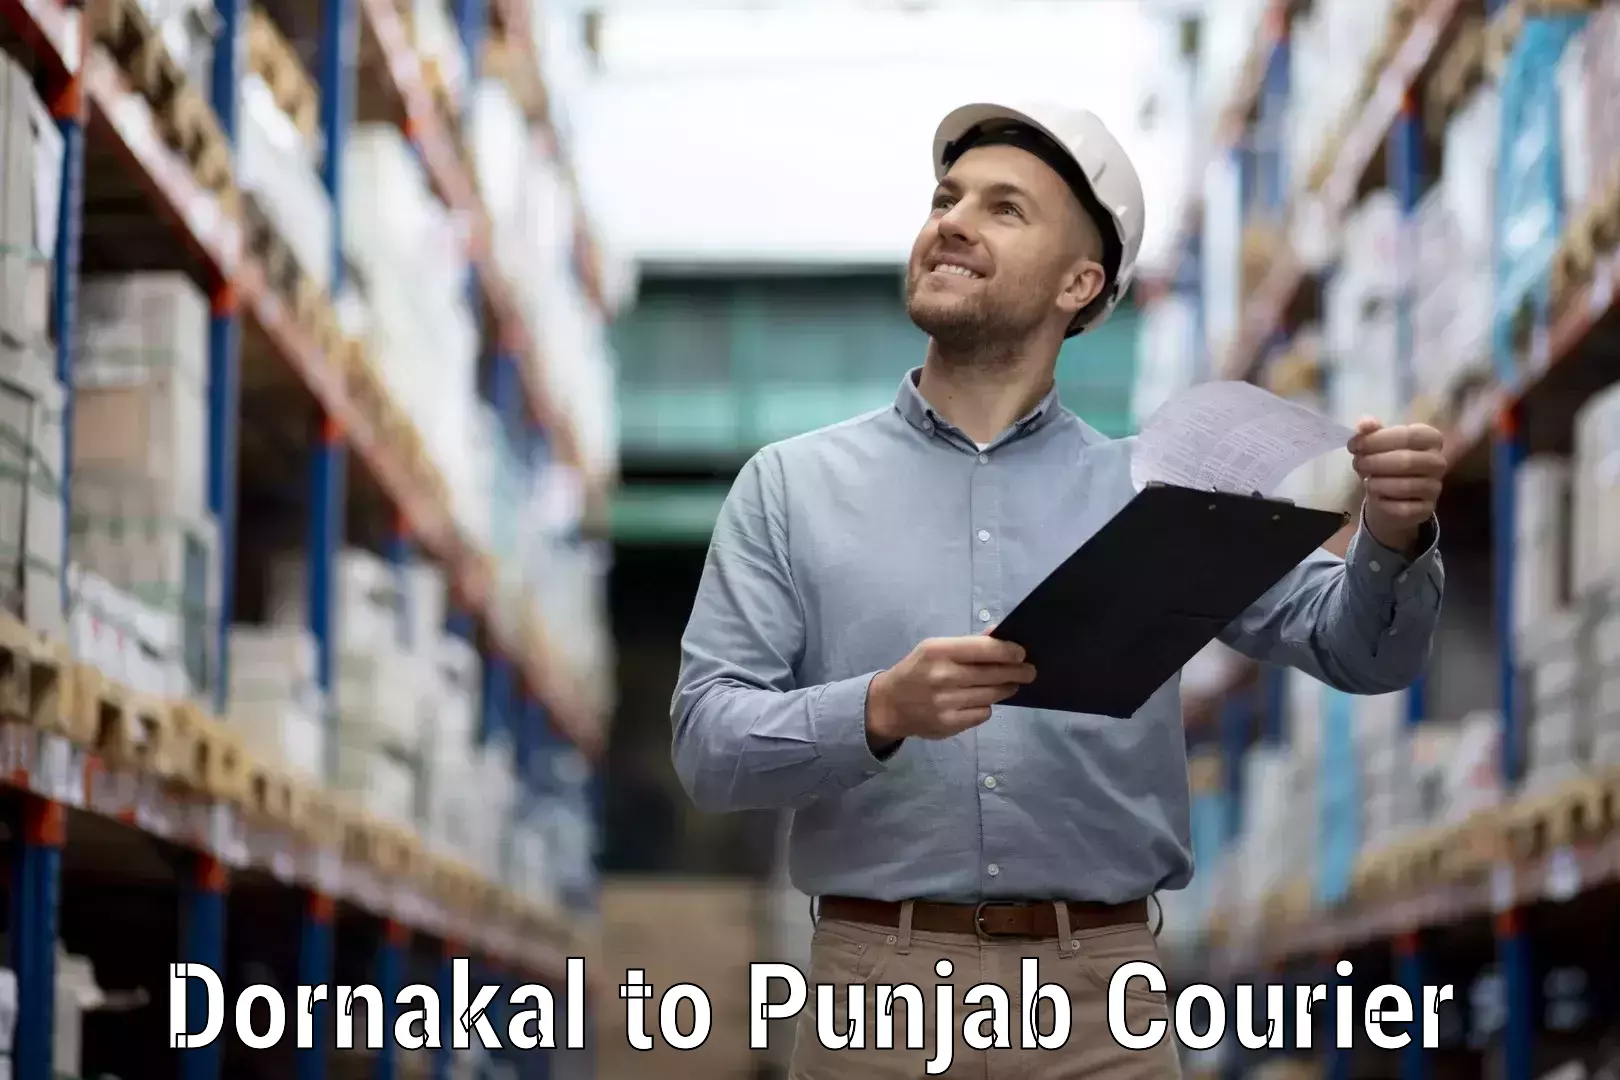 Enhanced shipping experience Dornakal to Nawanshahr